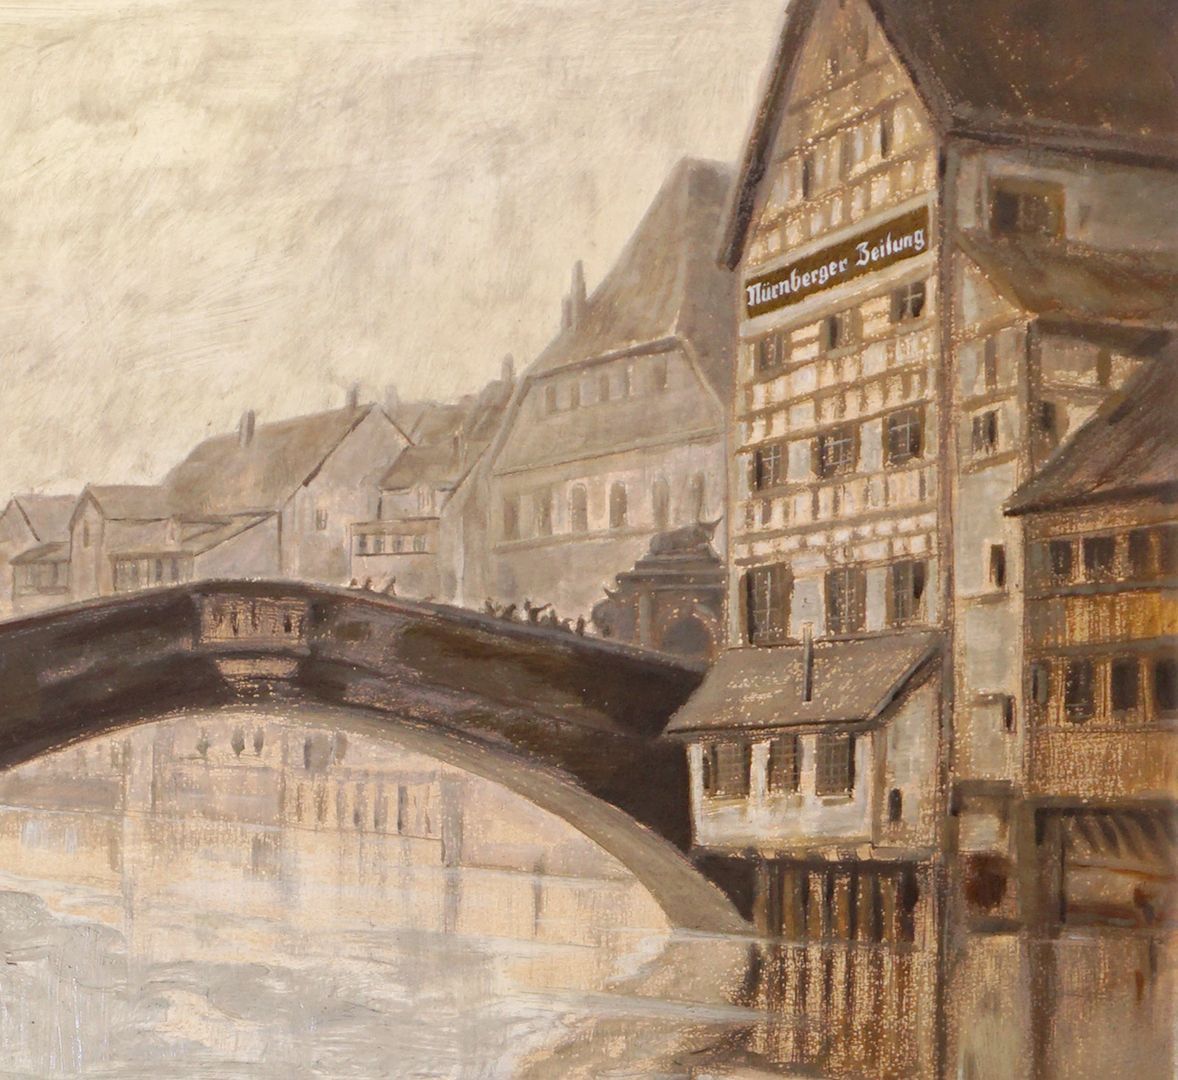 Fleischbrücke in Nuremberg Detail view